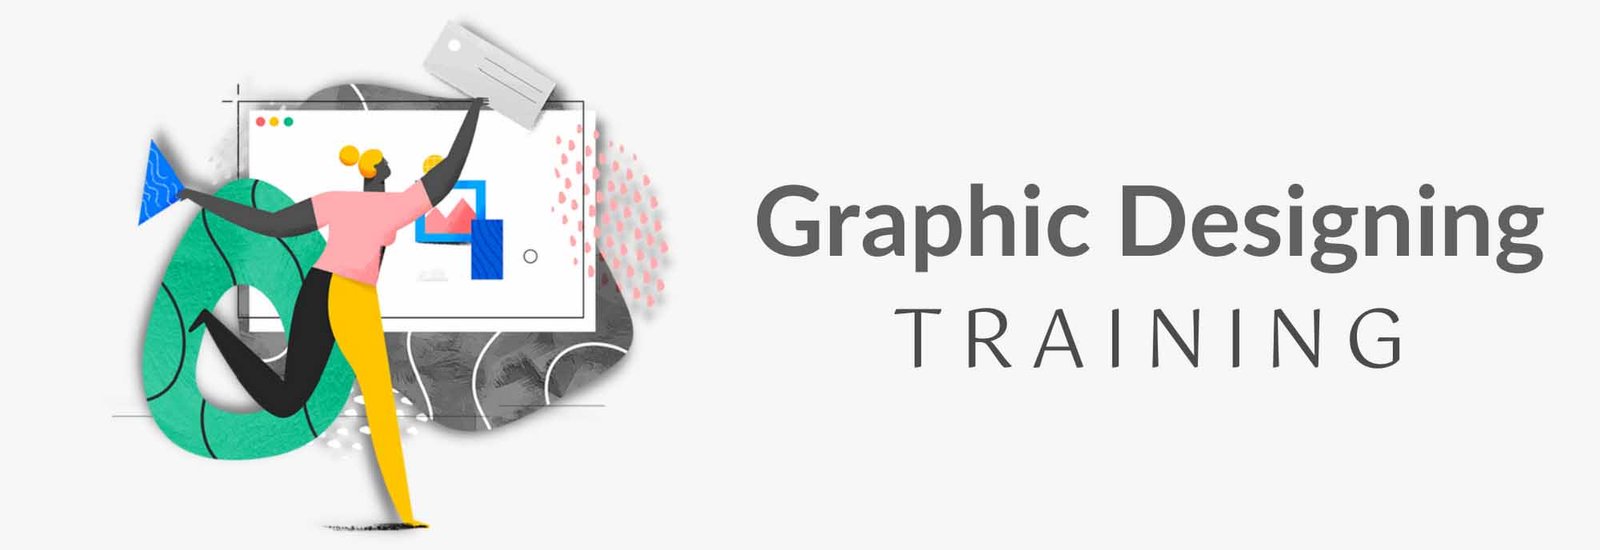 Graphic Designing Training